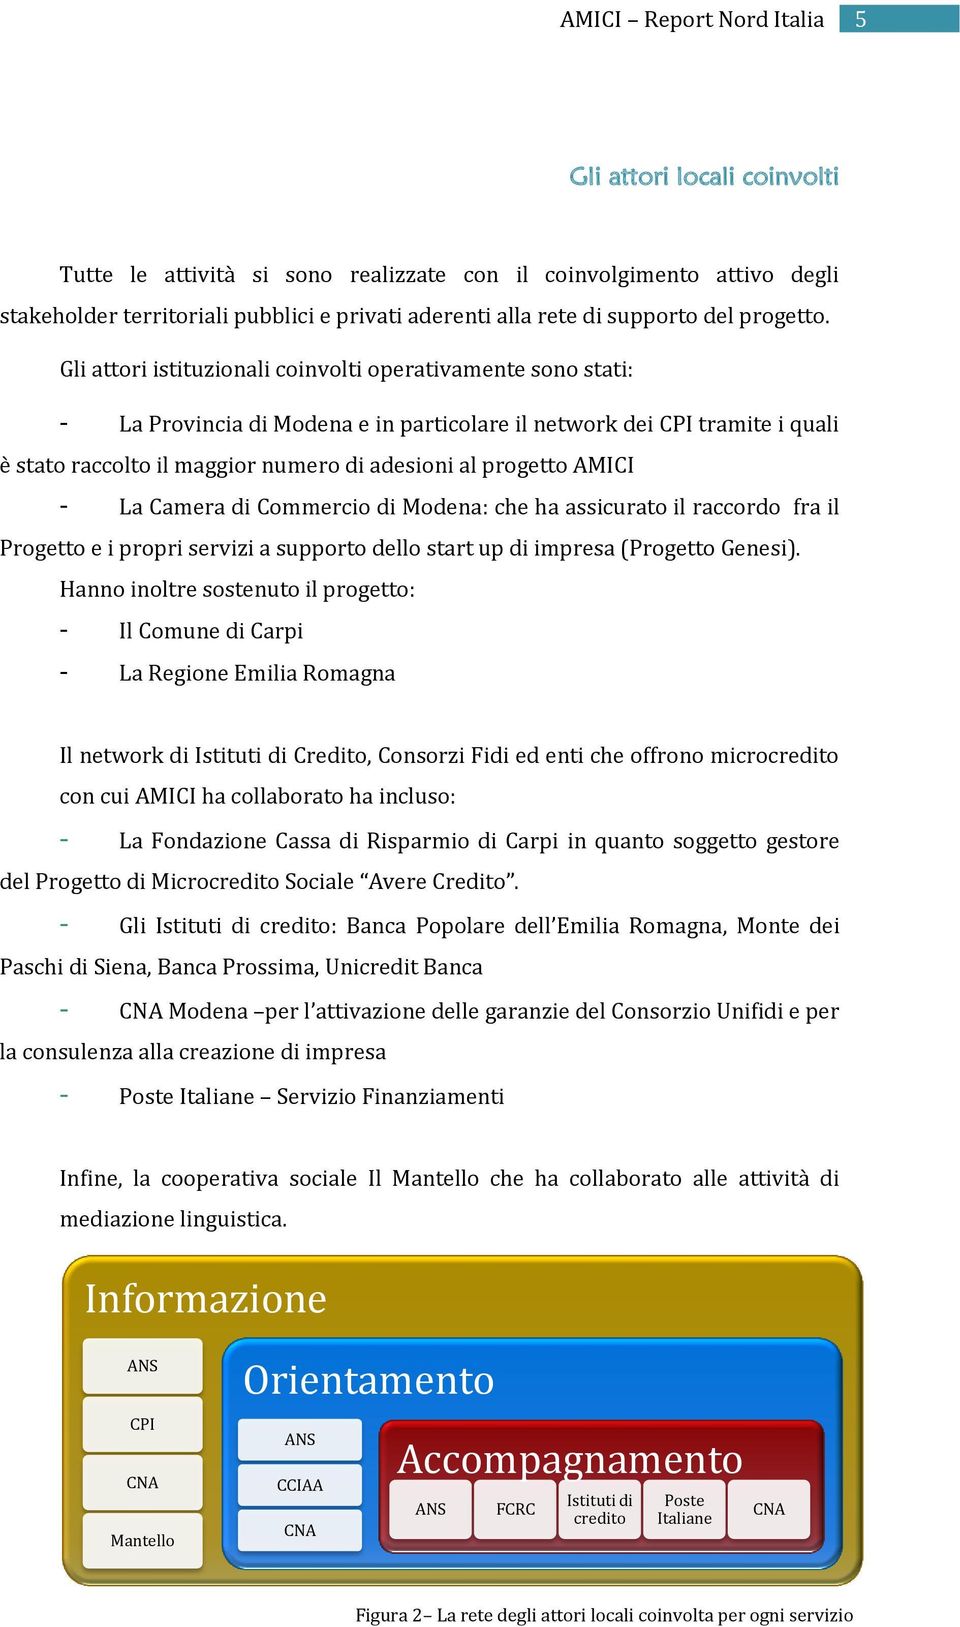 AMICI - La Camera di Commercio di Modena: che ha assicurato il raccordo fra il Progetto e i propri servizi a supporto dello start up di impresa (Progetto Genesi).